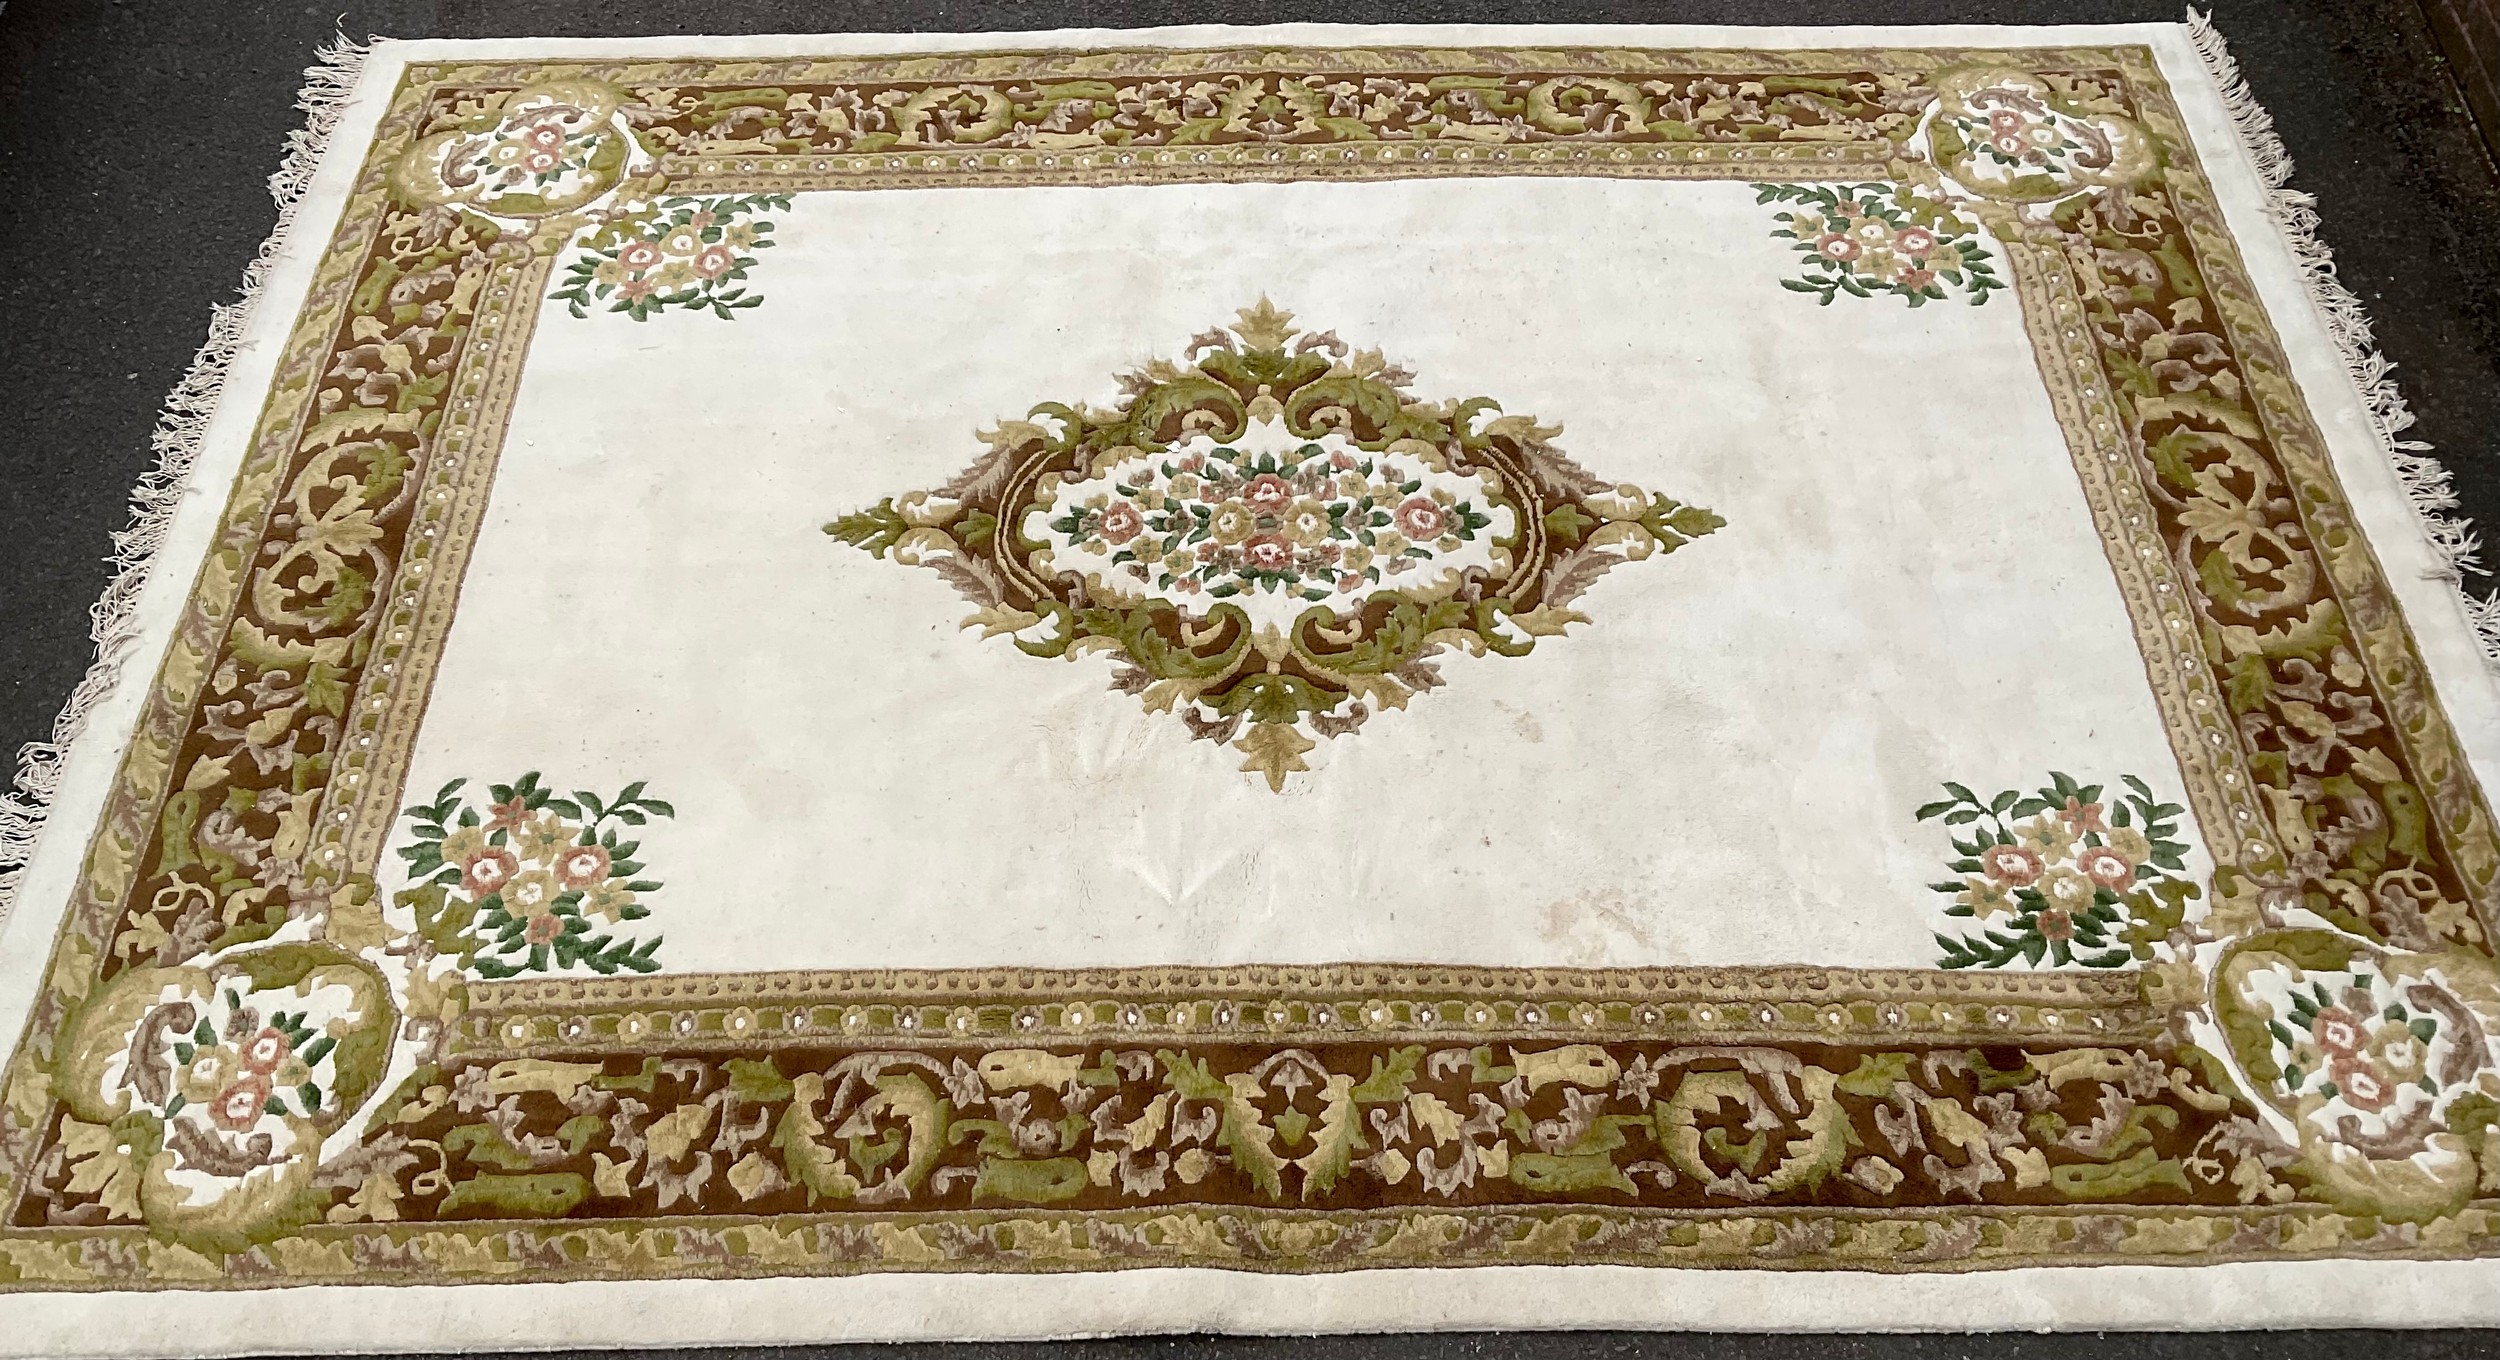 A Chinese rectangular woollen carpet, 369cm x 275cm